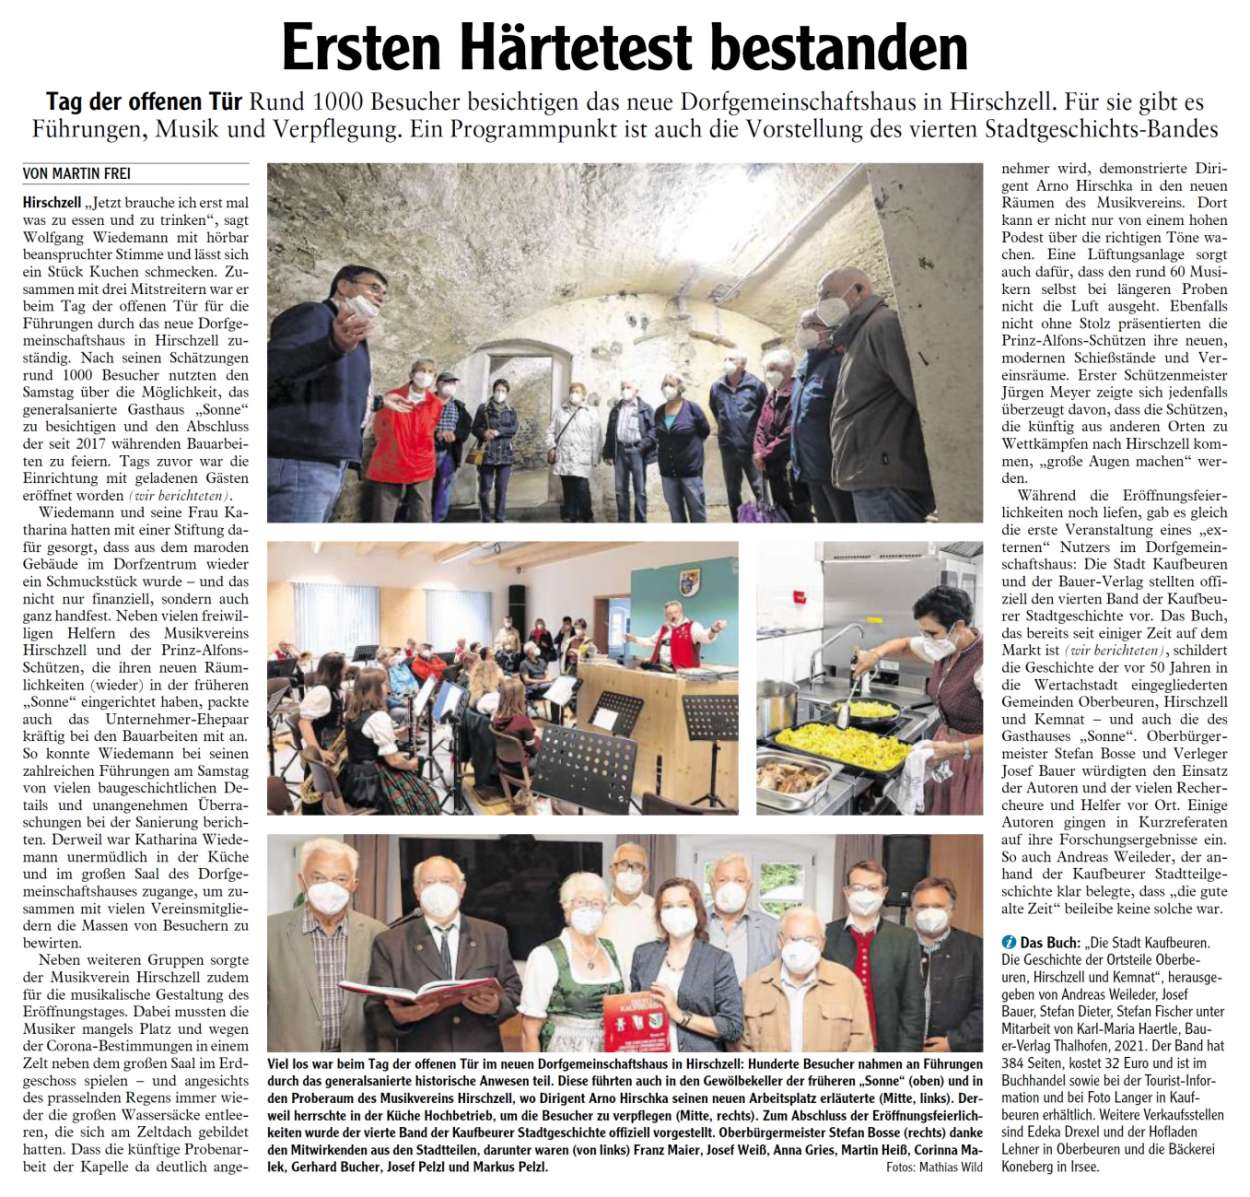 Pressebericht - Tag der offenen Tür 2021 Dorfgemeinschaftshaus, Hirschzell - Musikverein Hirschzell, Kaufbeuren